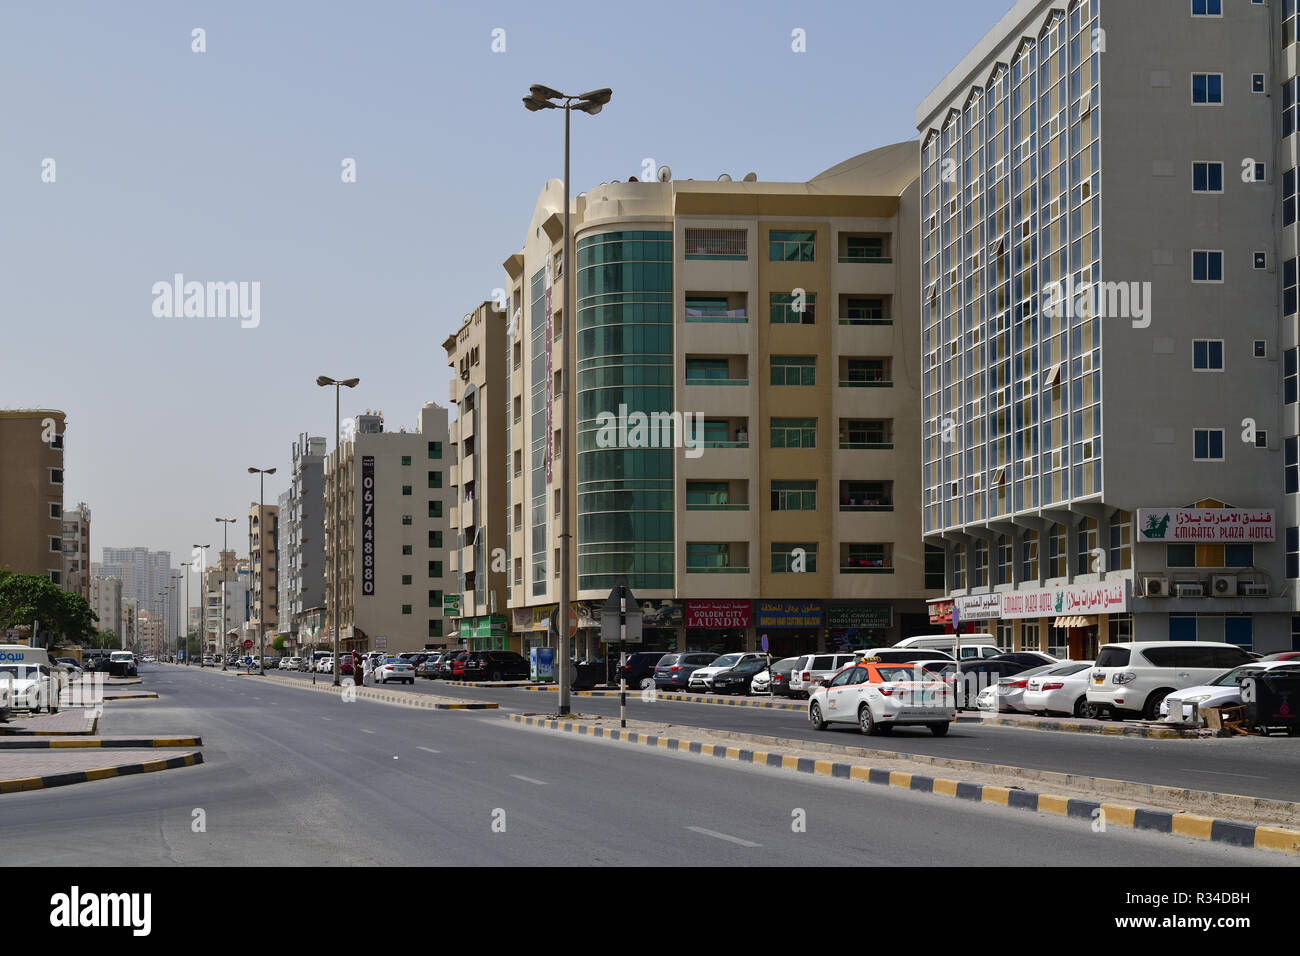 Ajman, UAE - April 6. 2018. Central part of a city Stock Photo